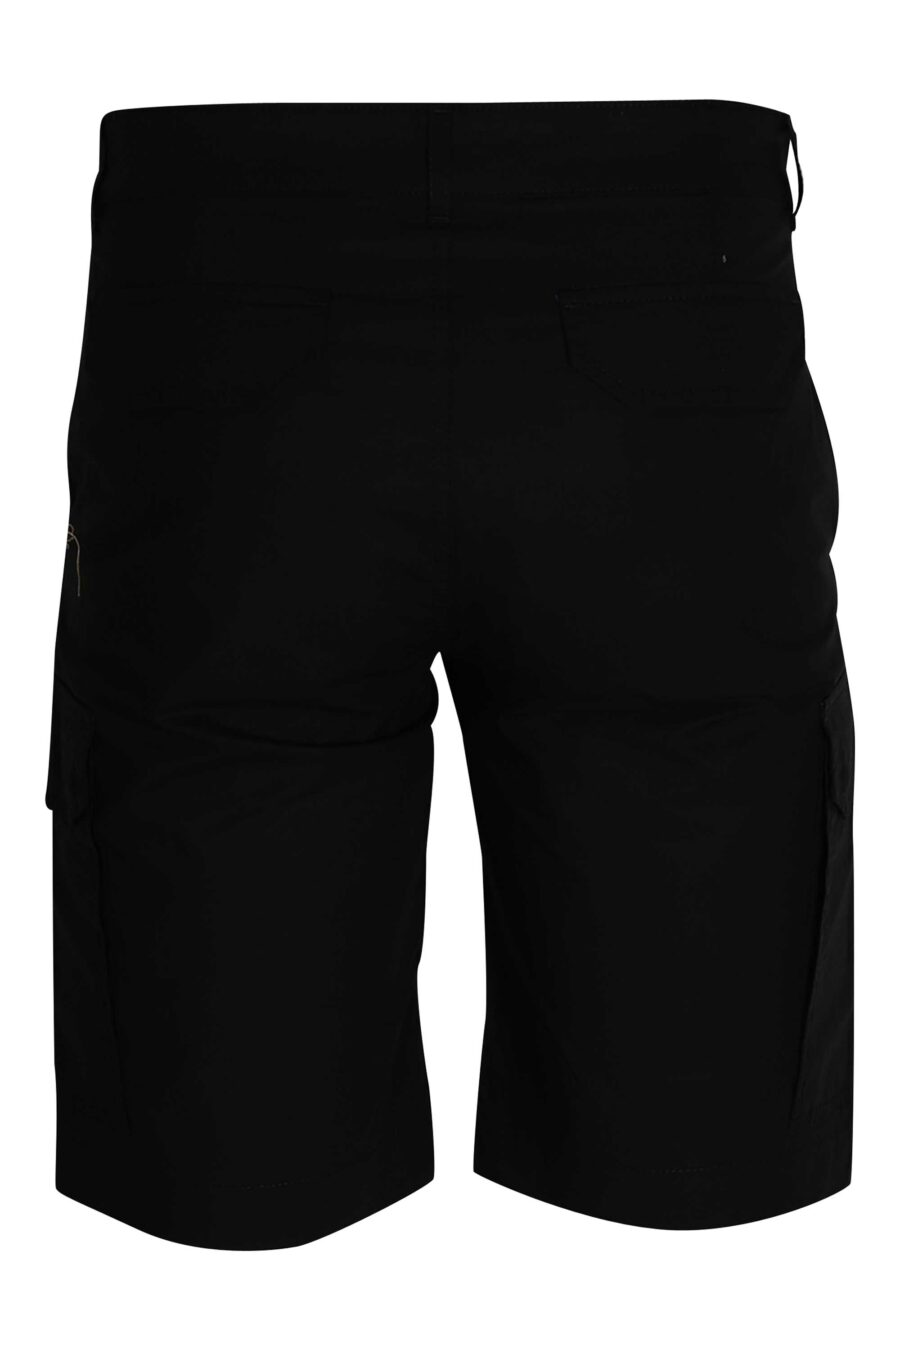 Pantalón negro corto estilo cargo con logo - 4062226166942 2